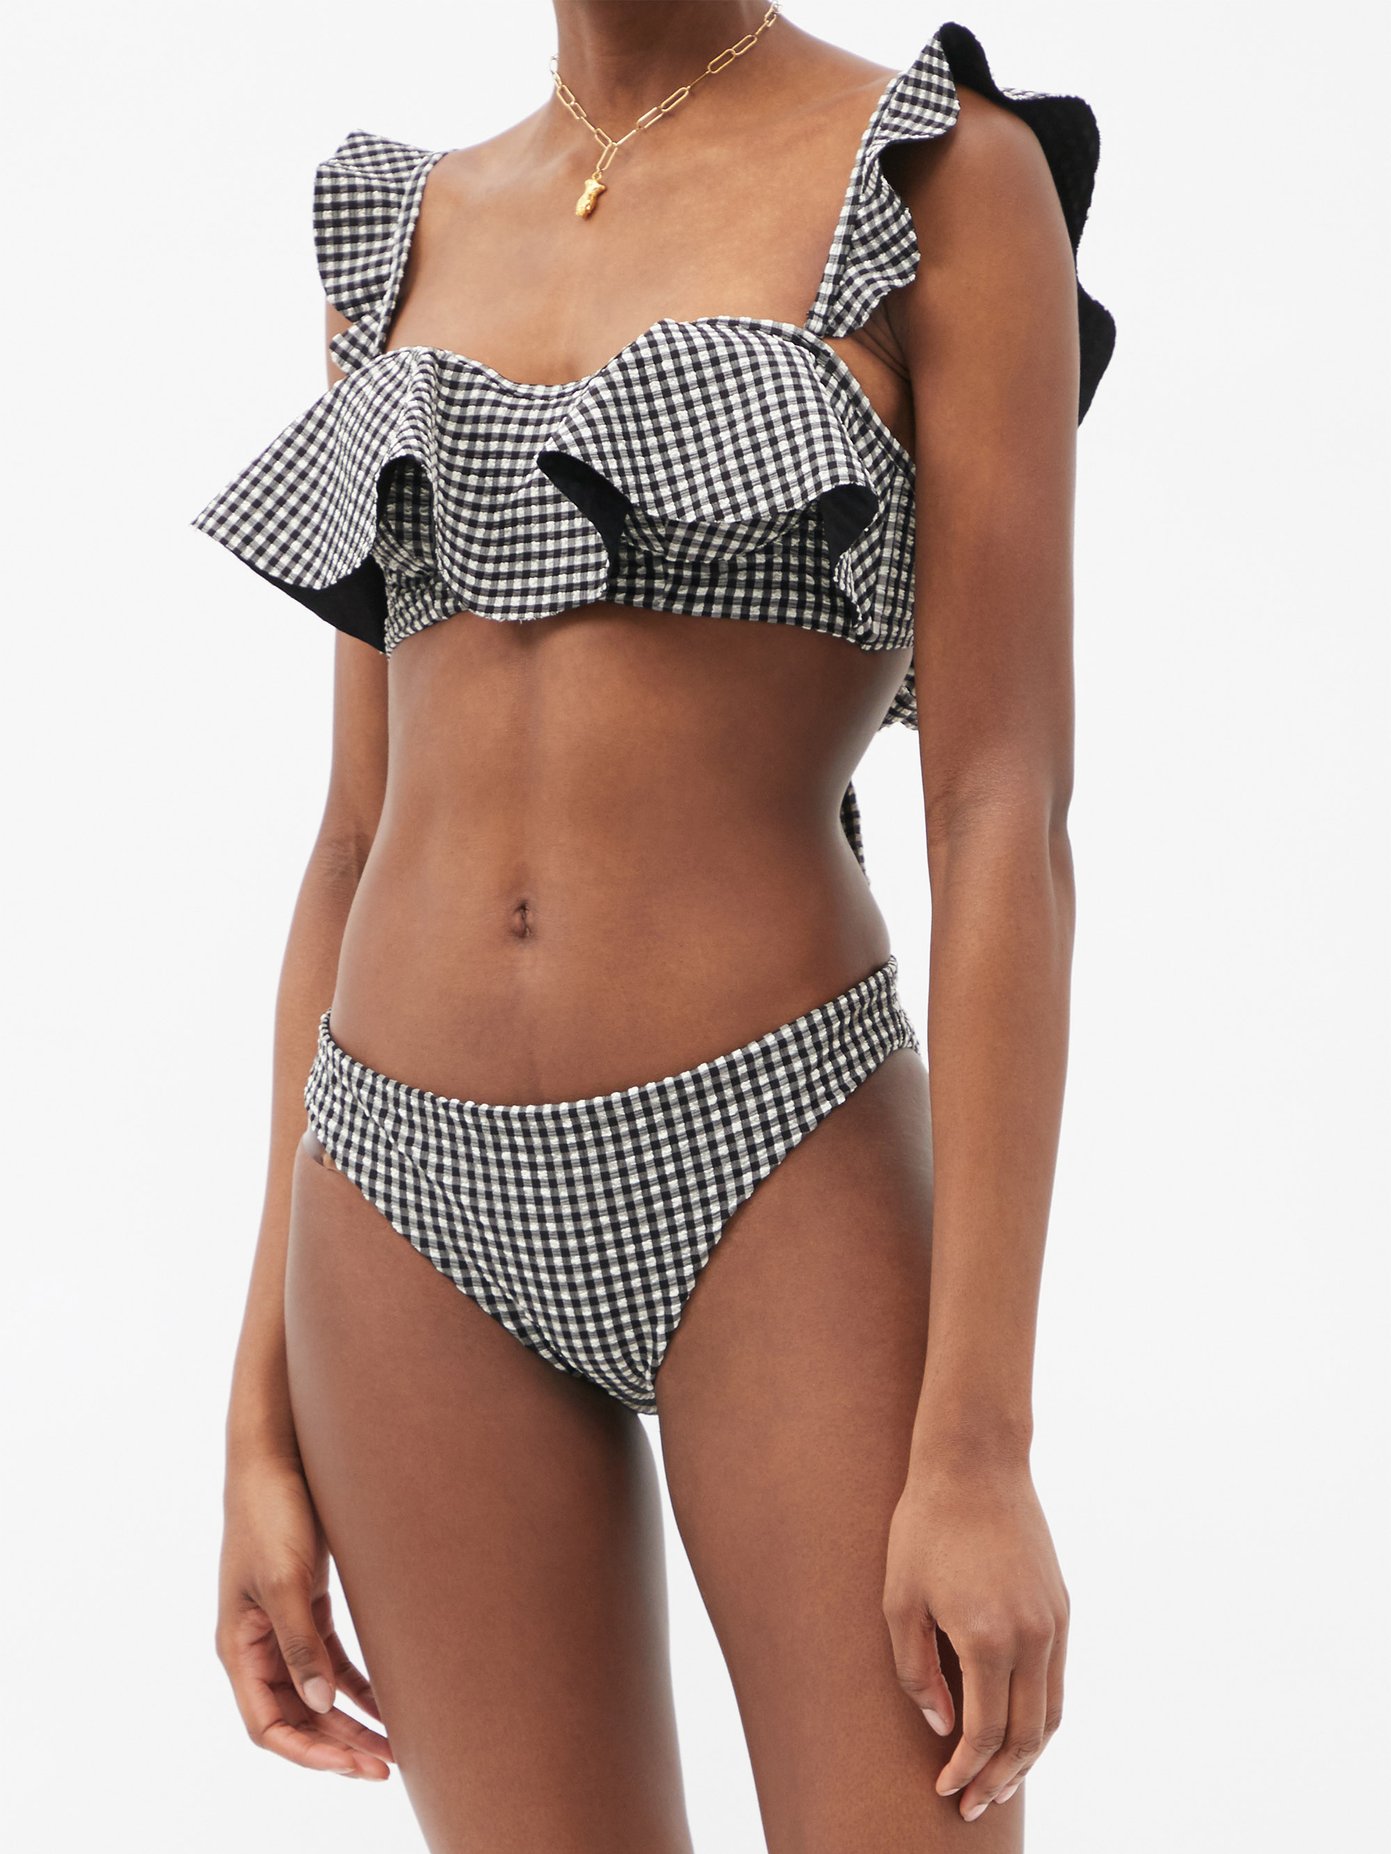 SELF-PORTRAIT
Gingham ruffled bikini top